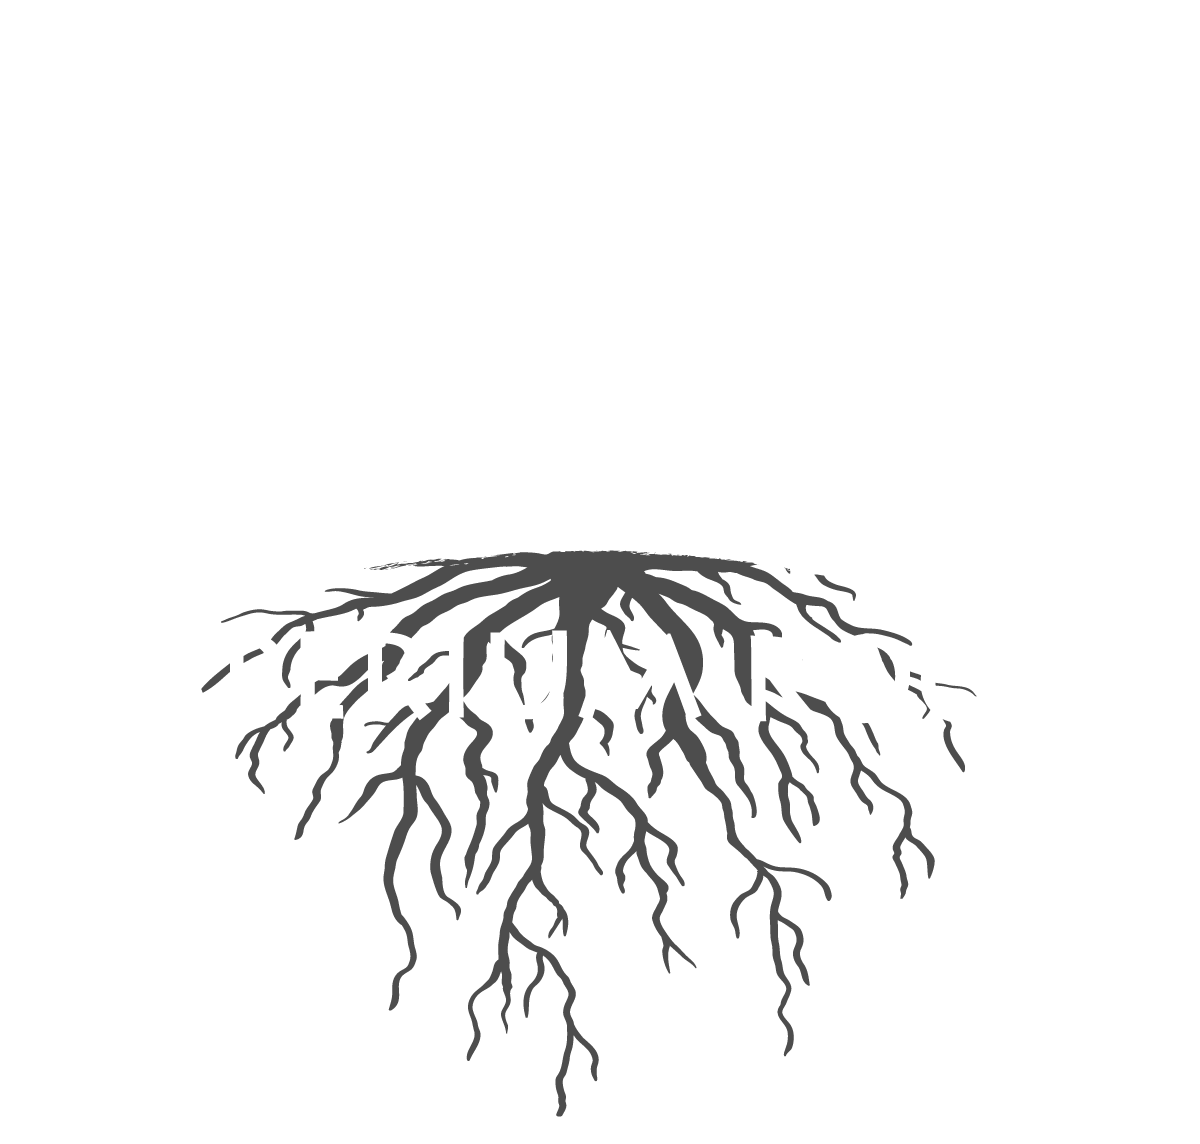 Imperium Roots - Premium Indoor Hemp